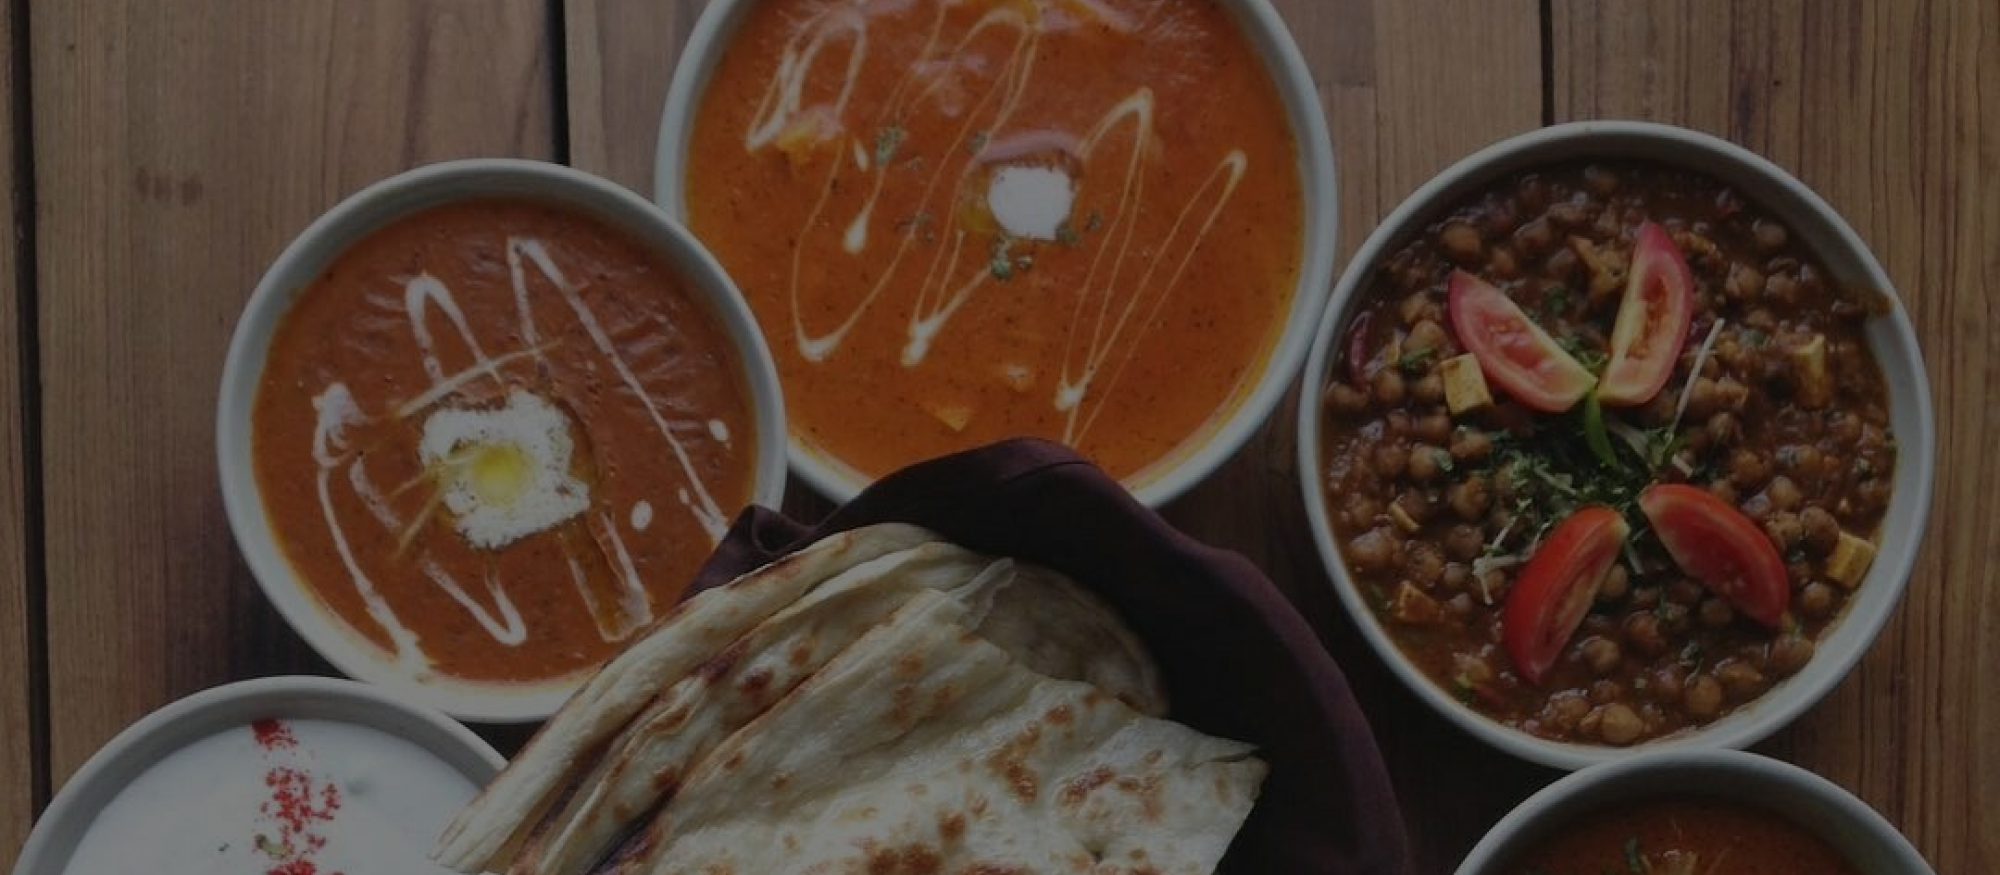 New Clovis restaurant bringing authentic Indian cuisine